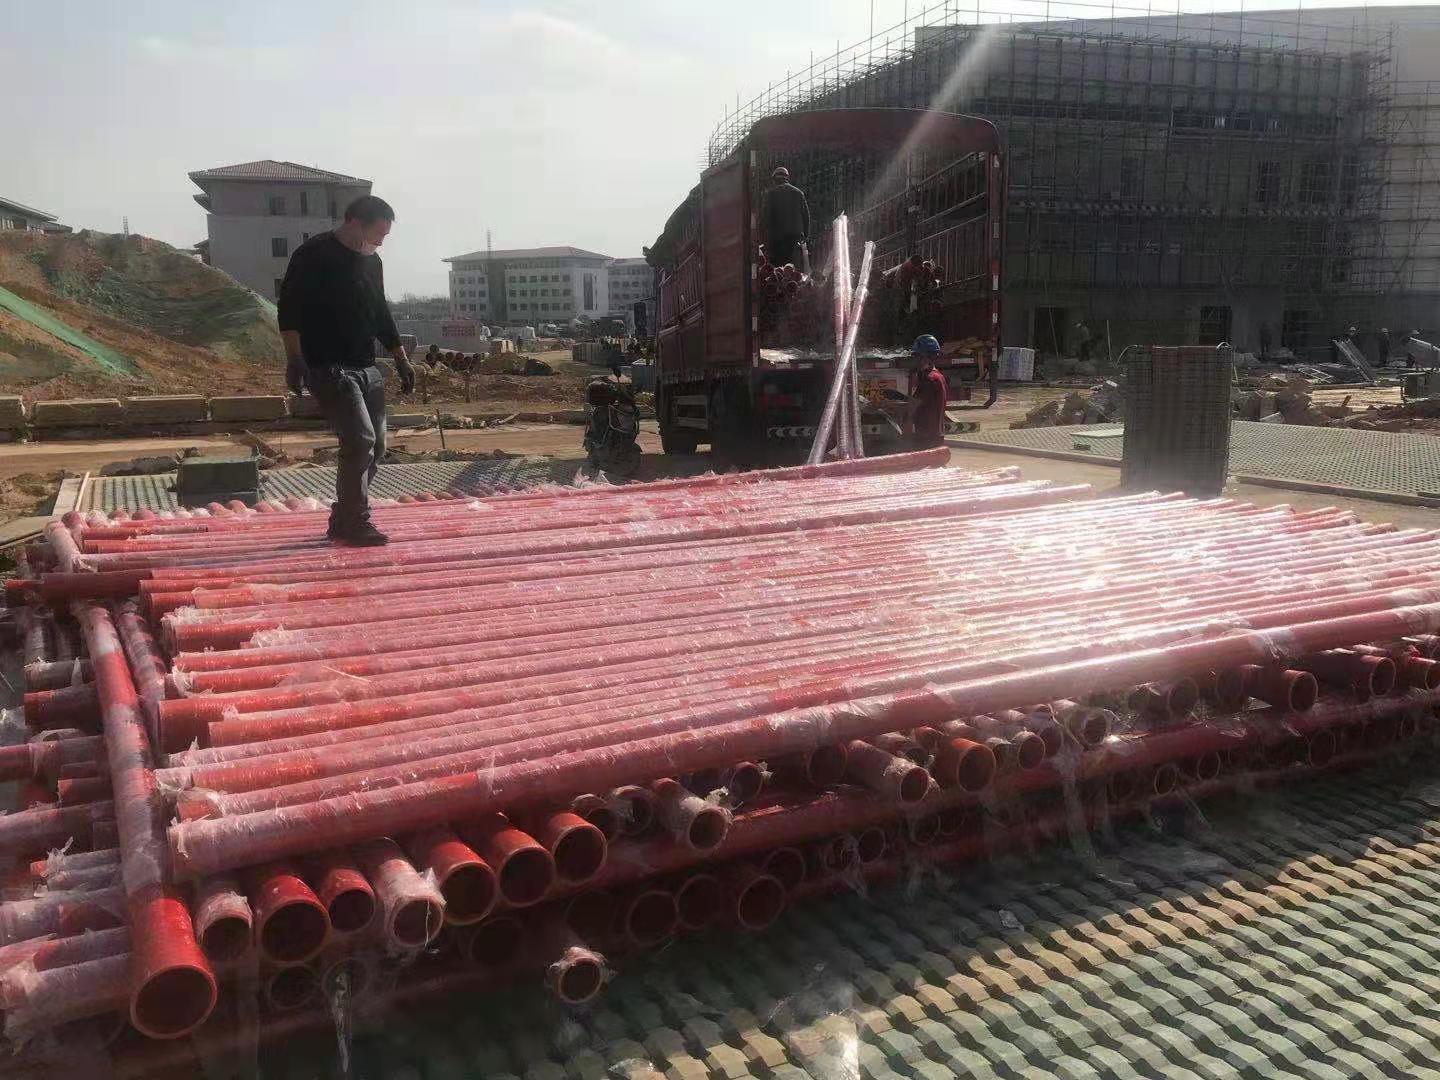 福建融通管業有限公司生產的“榕通”牌玻璃鋼電力護套管用于福建省二建省委黨校項目之中